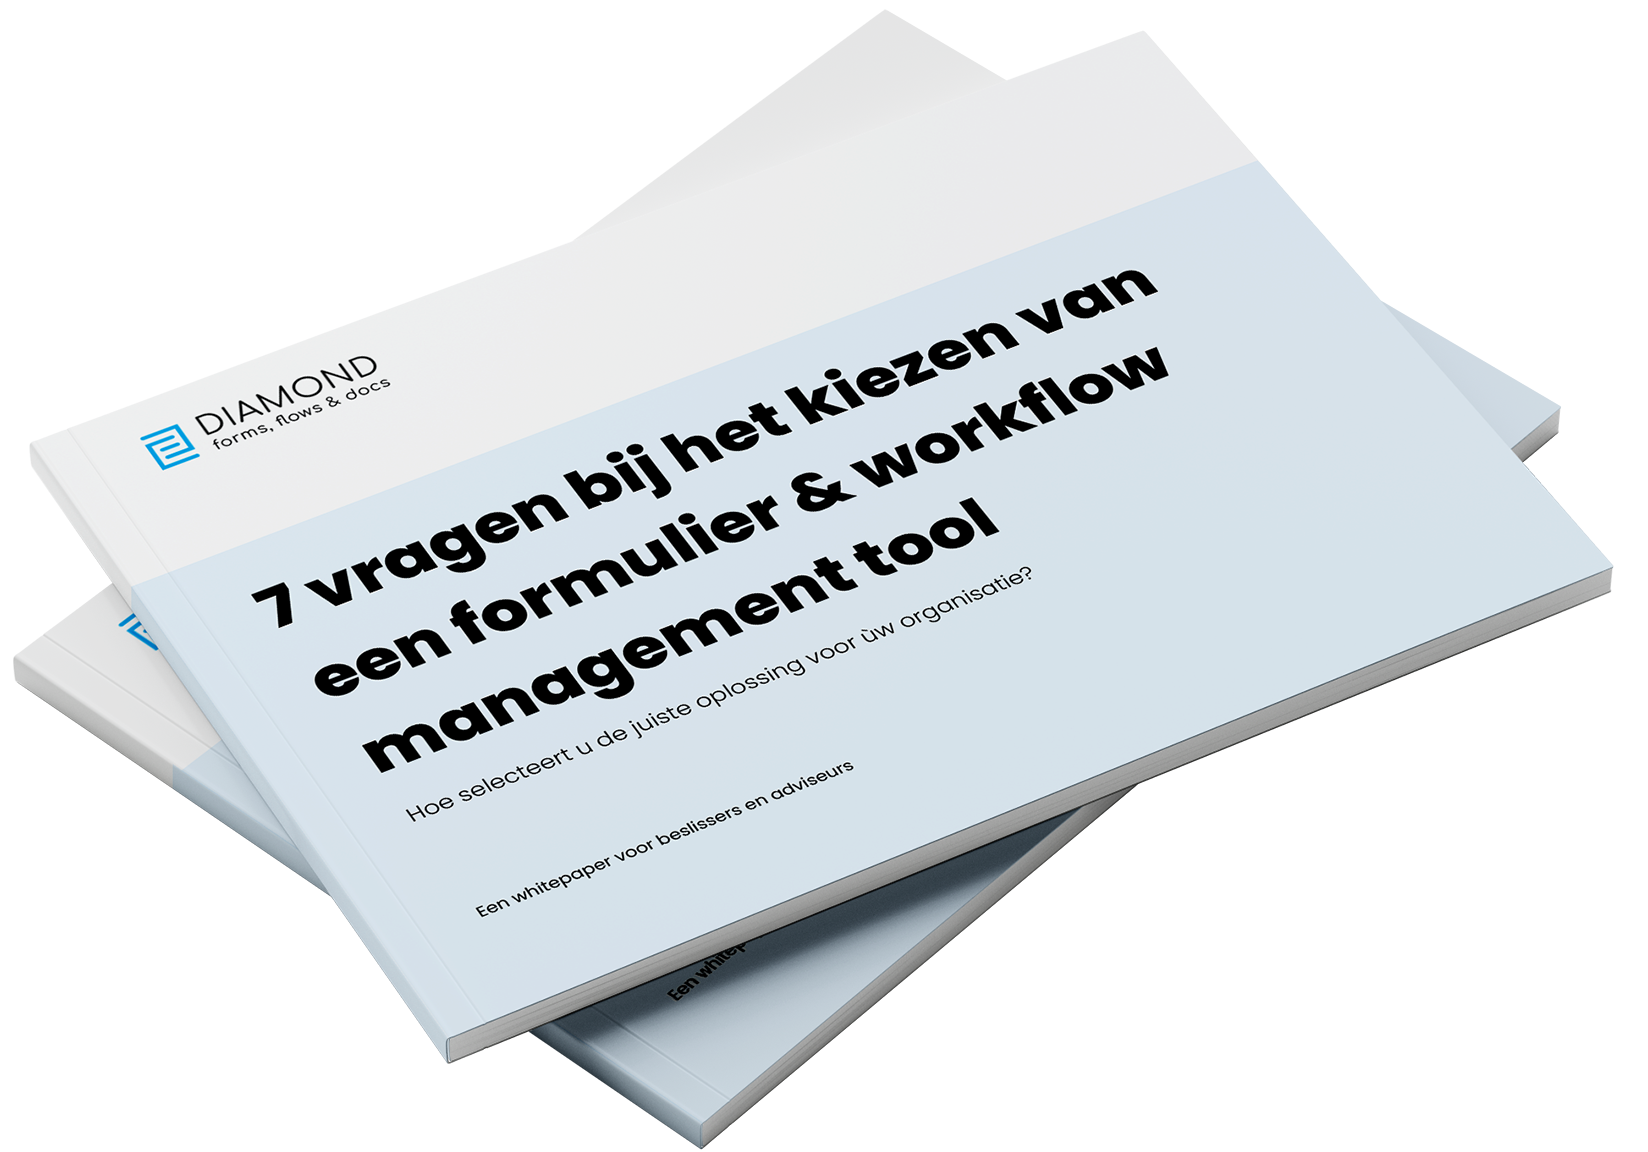 Whitepaper formulieren workflow management tool